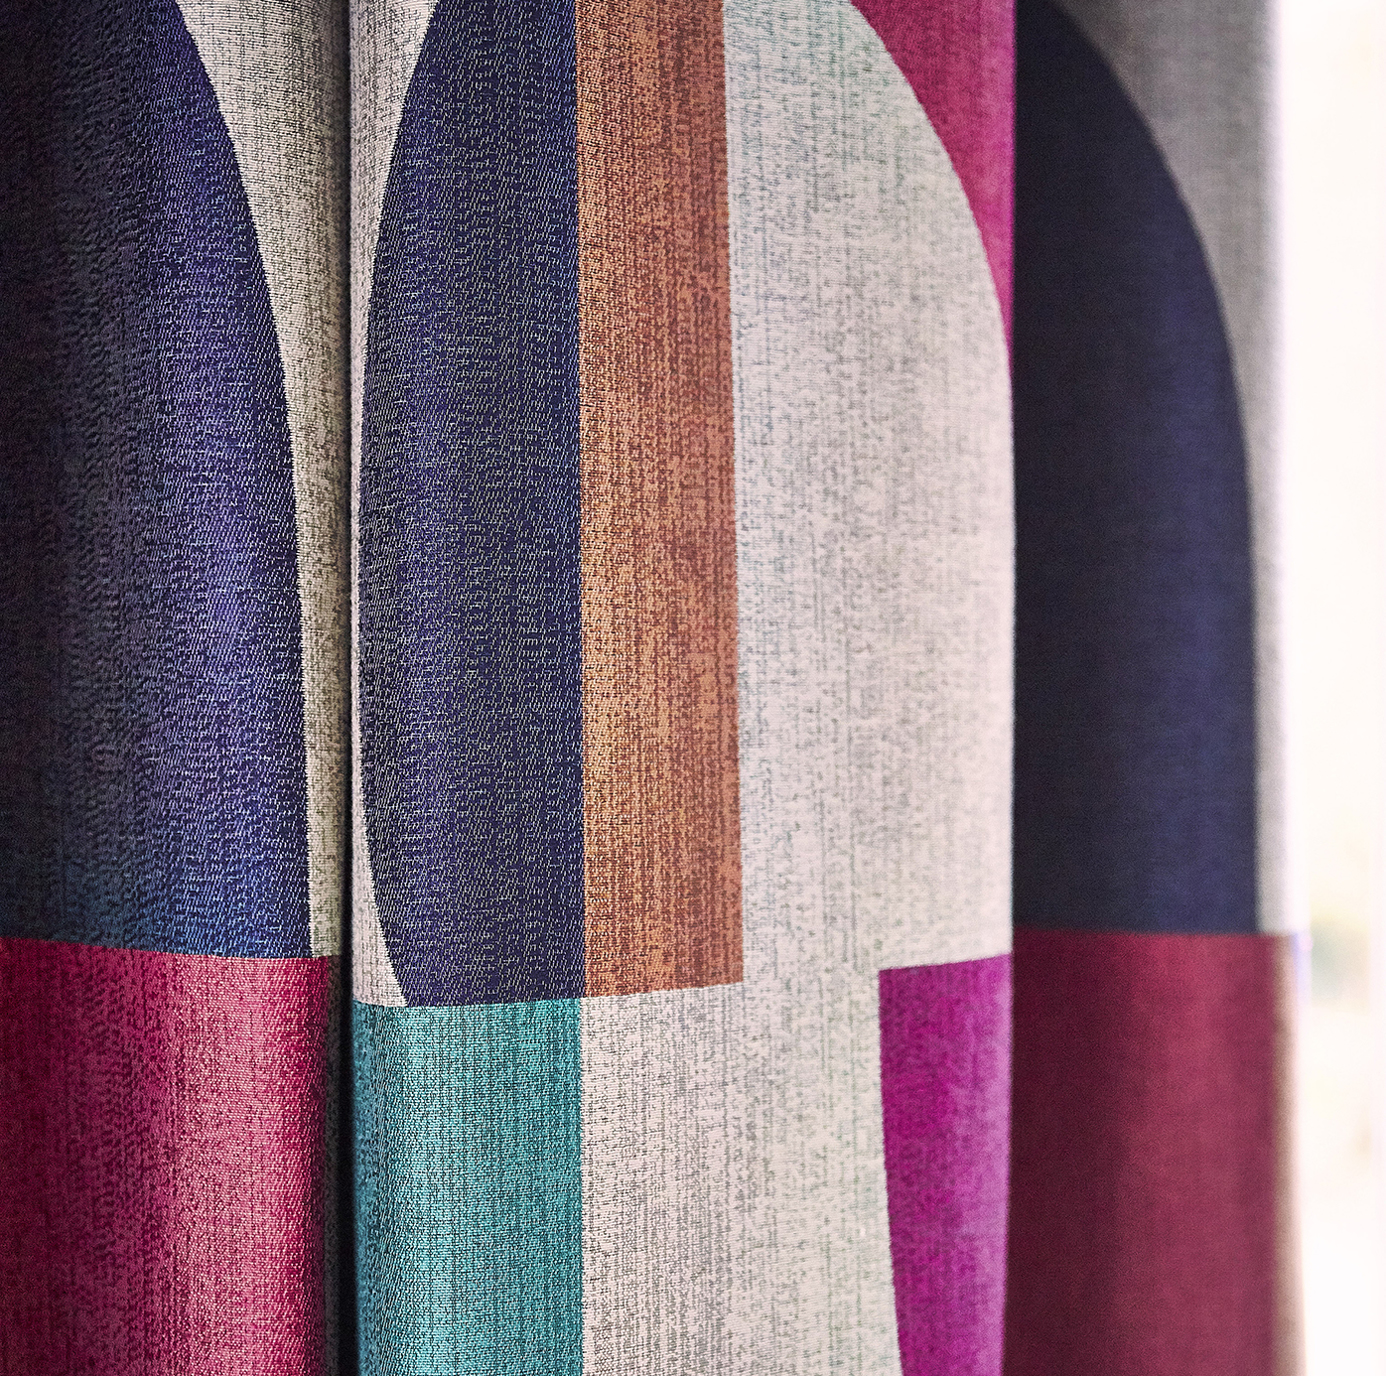 Bodega Saffron / Charcoal / Wasabi Fabric by HAR